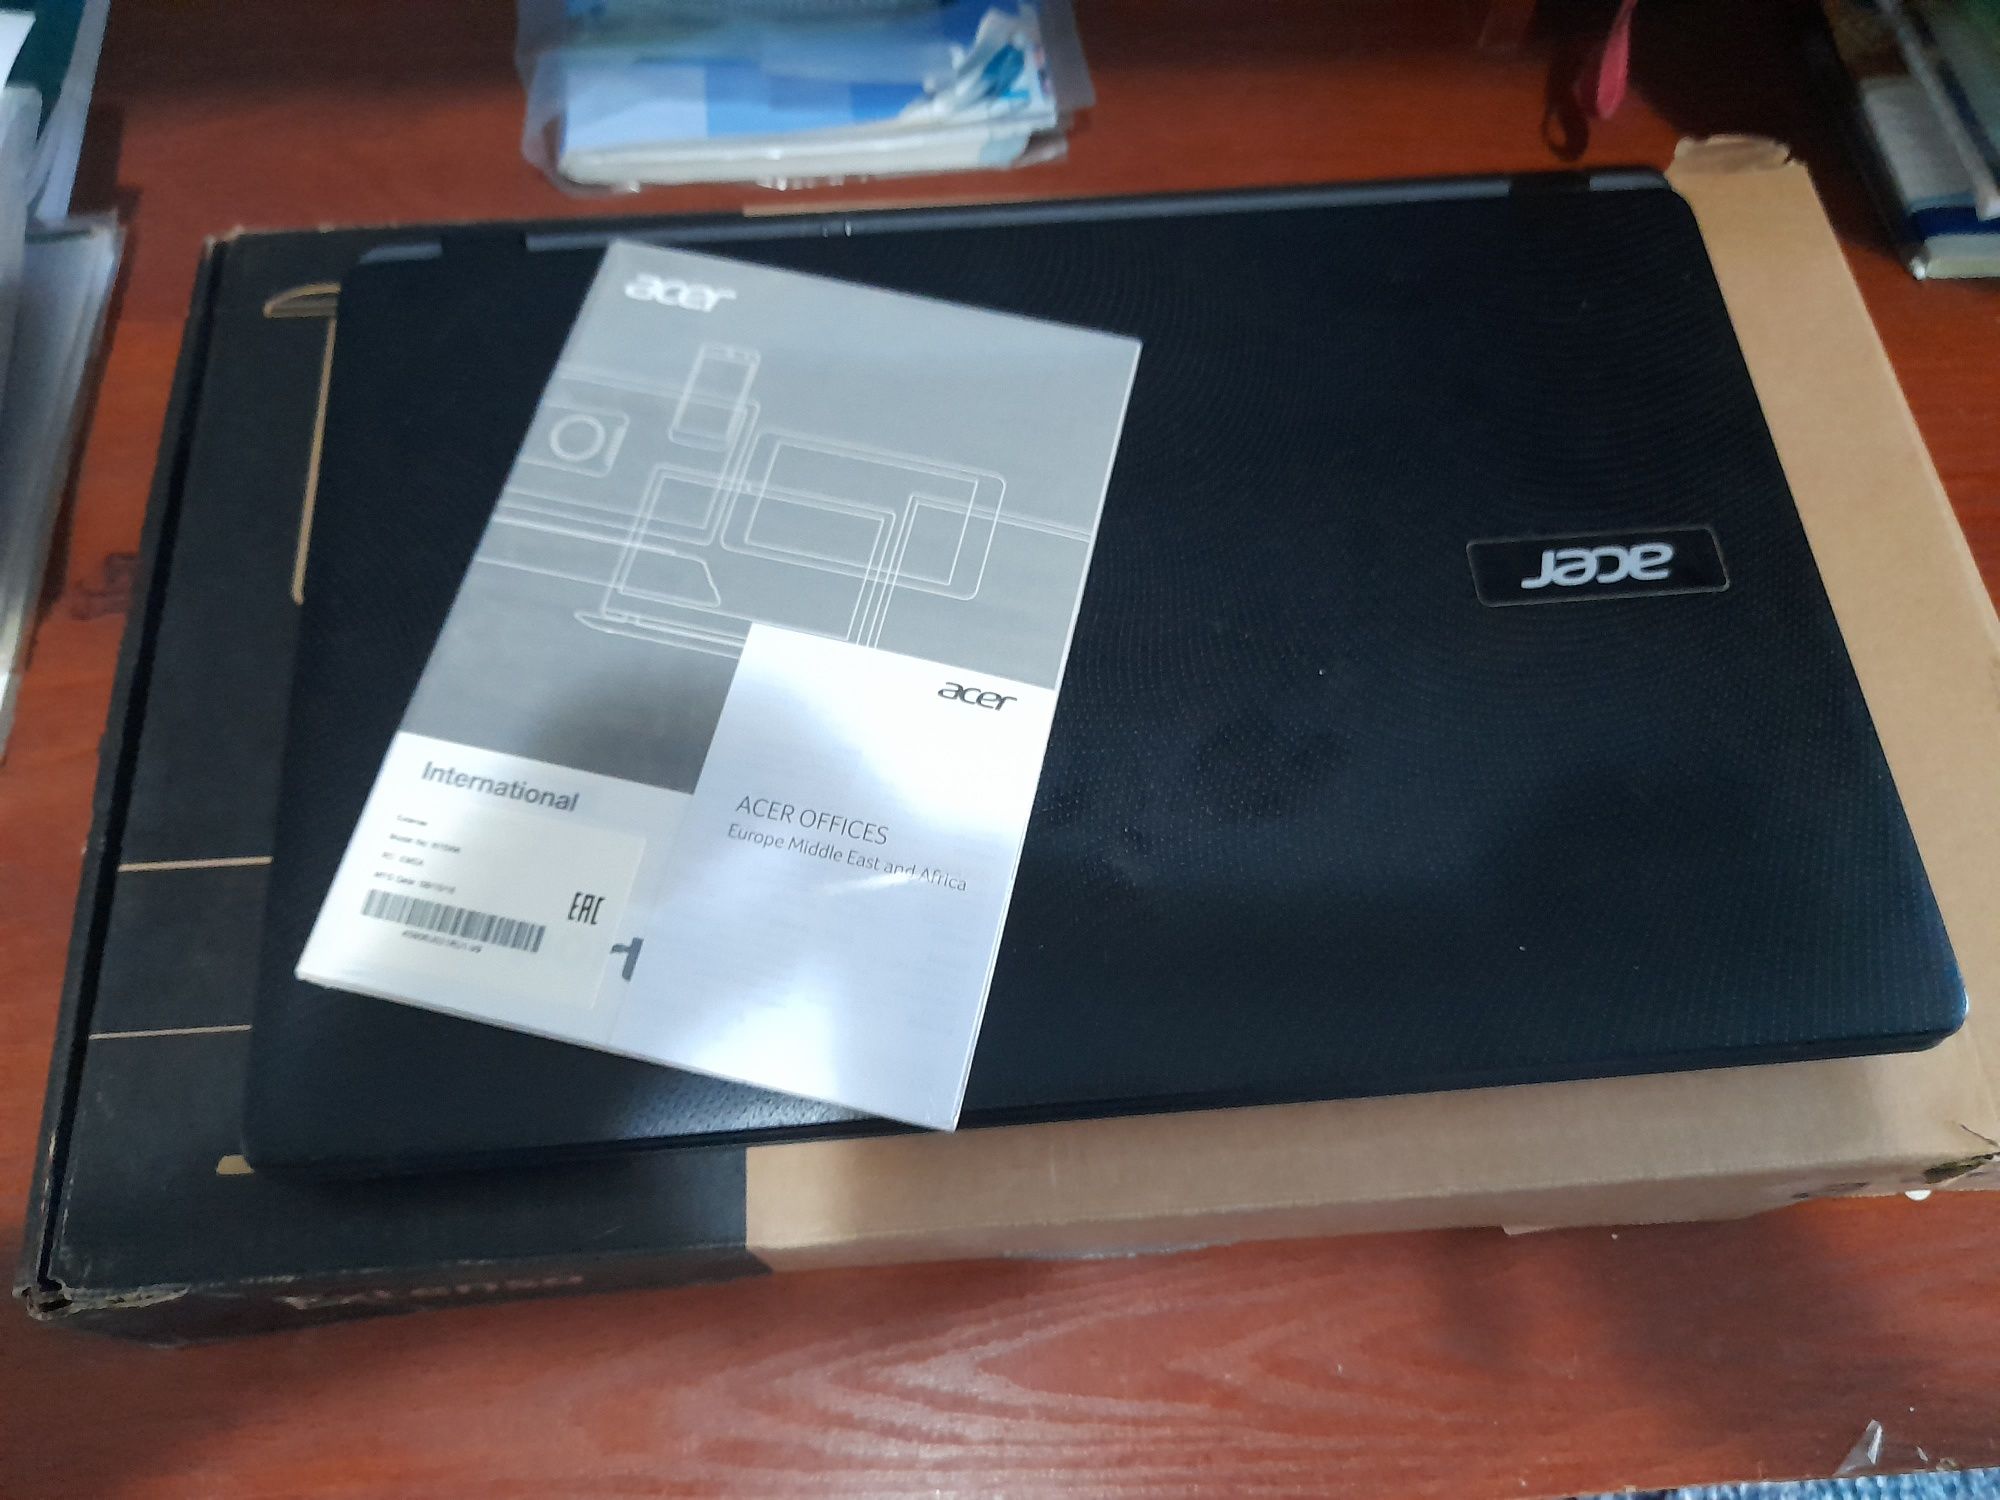 Noutbook OZU 4GB